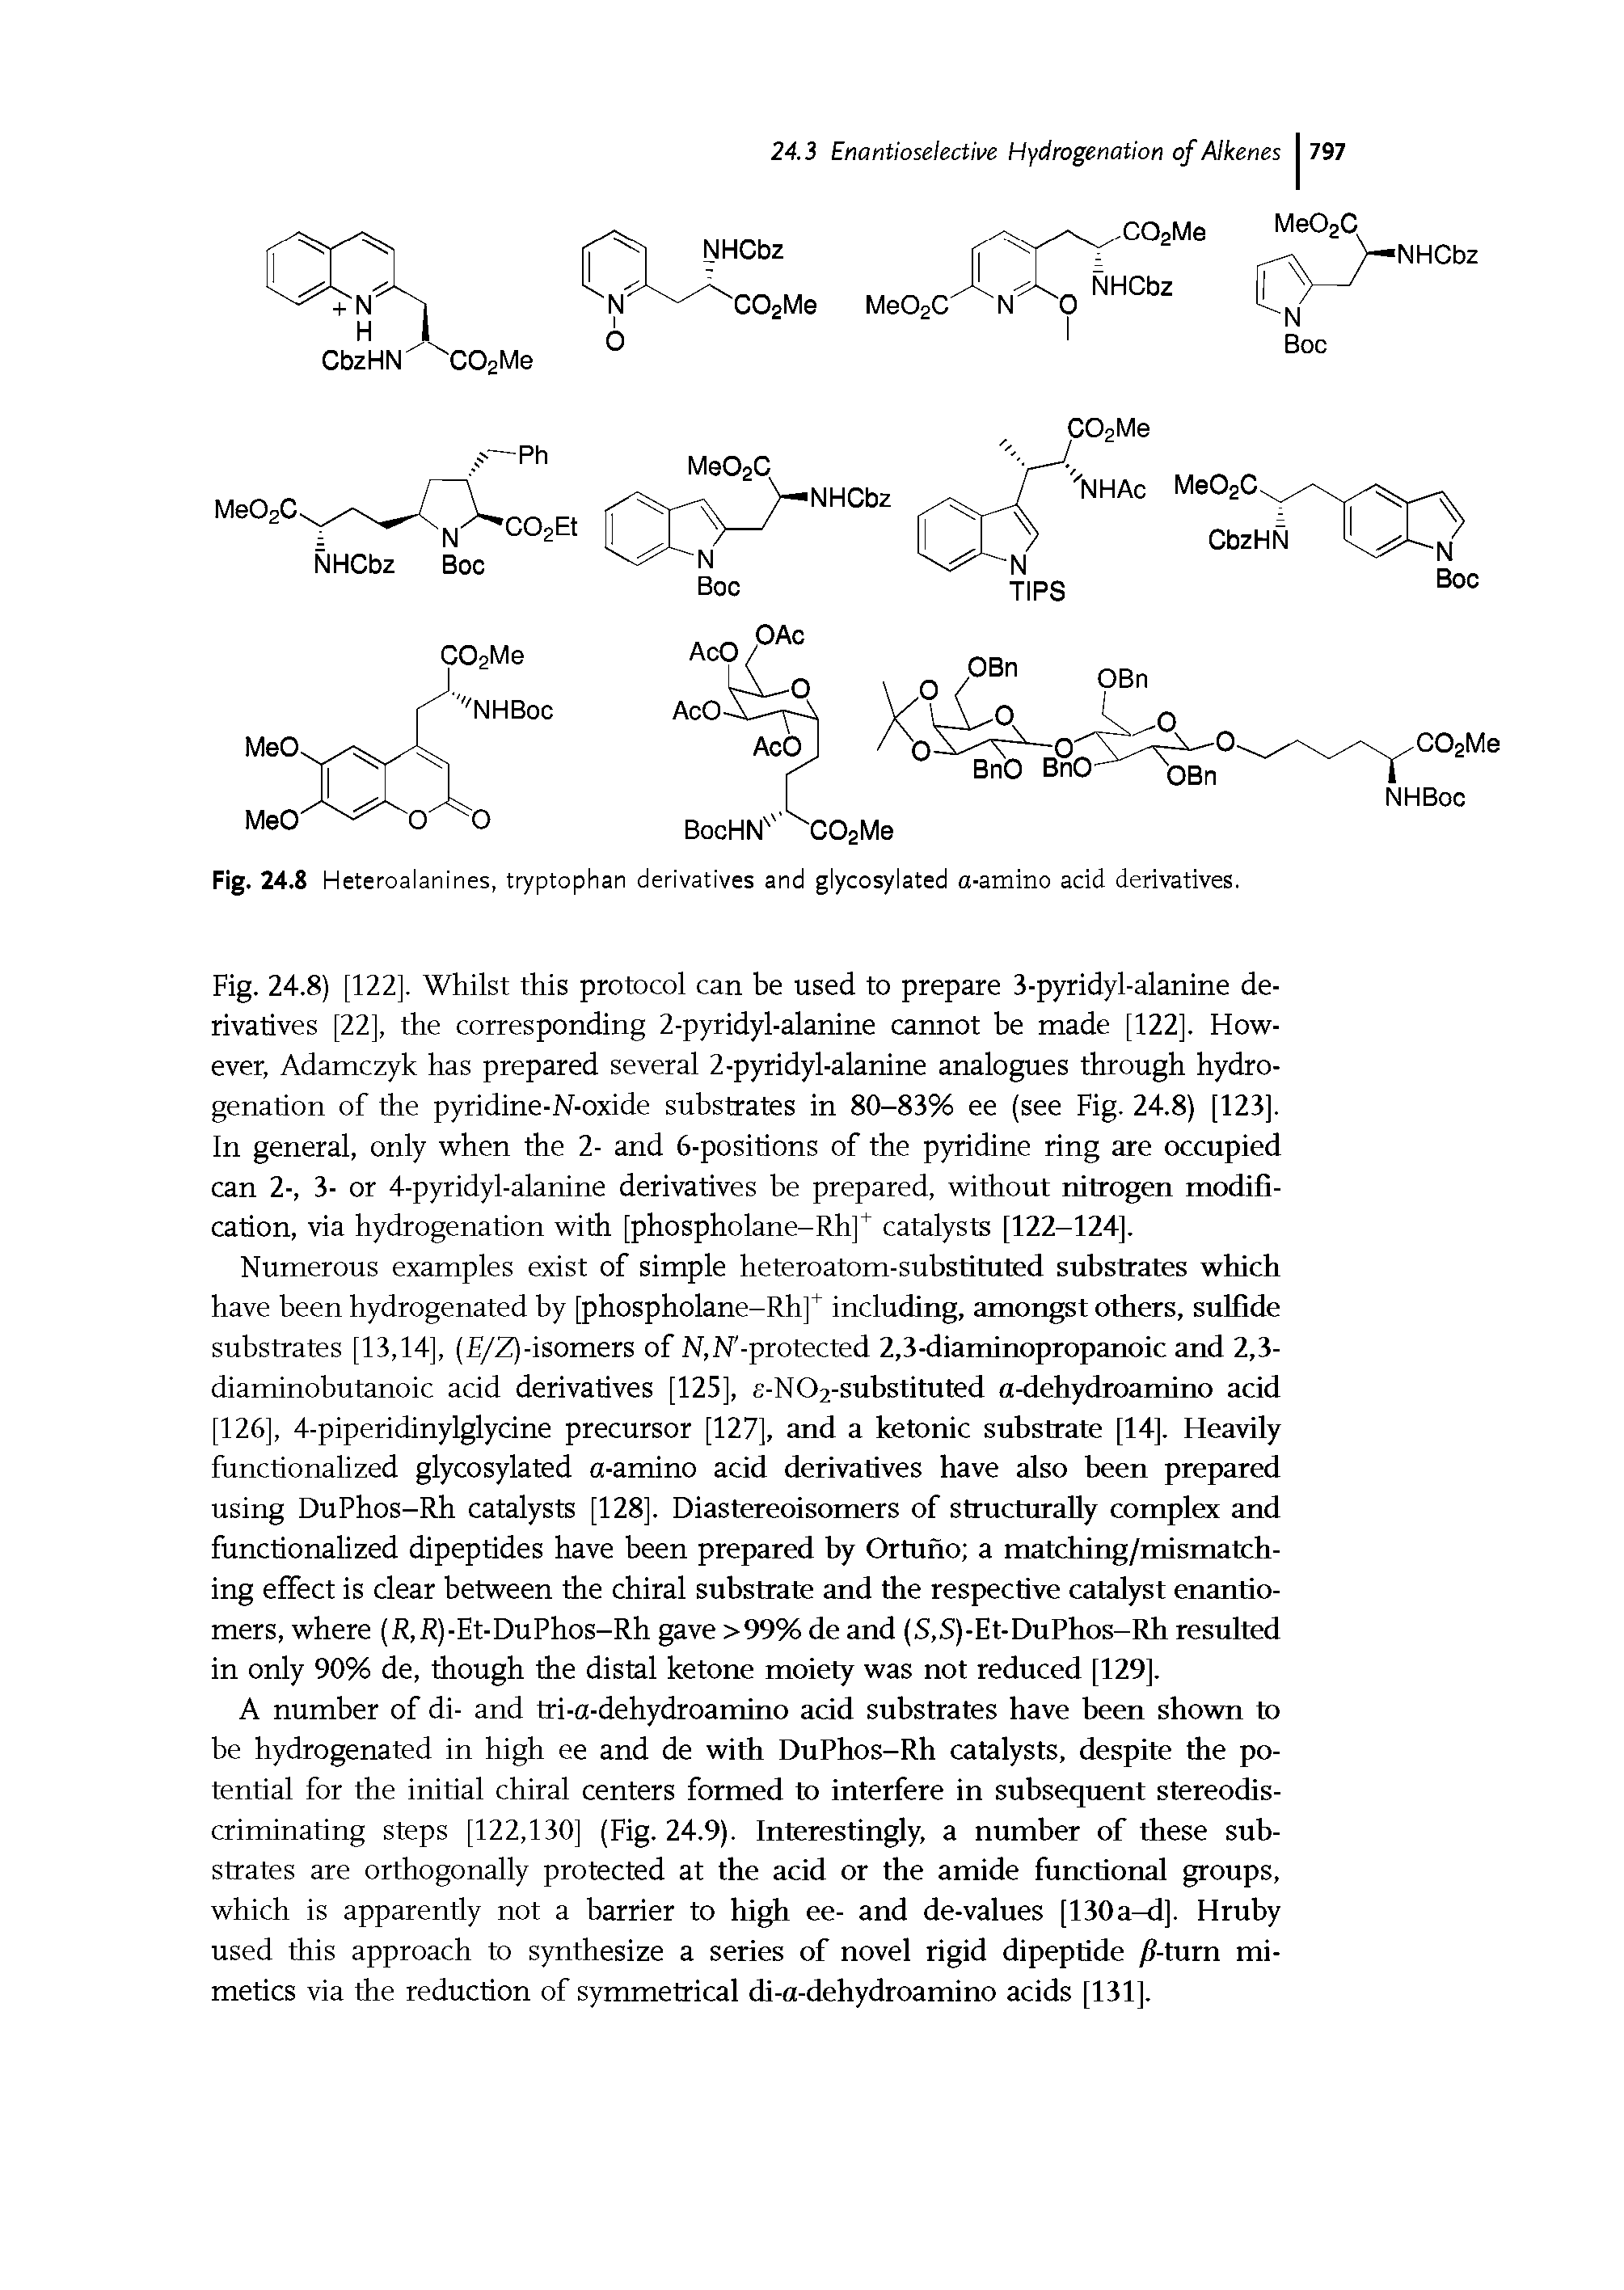 Fig. 24.8 Heteroalanines, tryptophan derivatives and glycosylated a-amino acid derivatives.